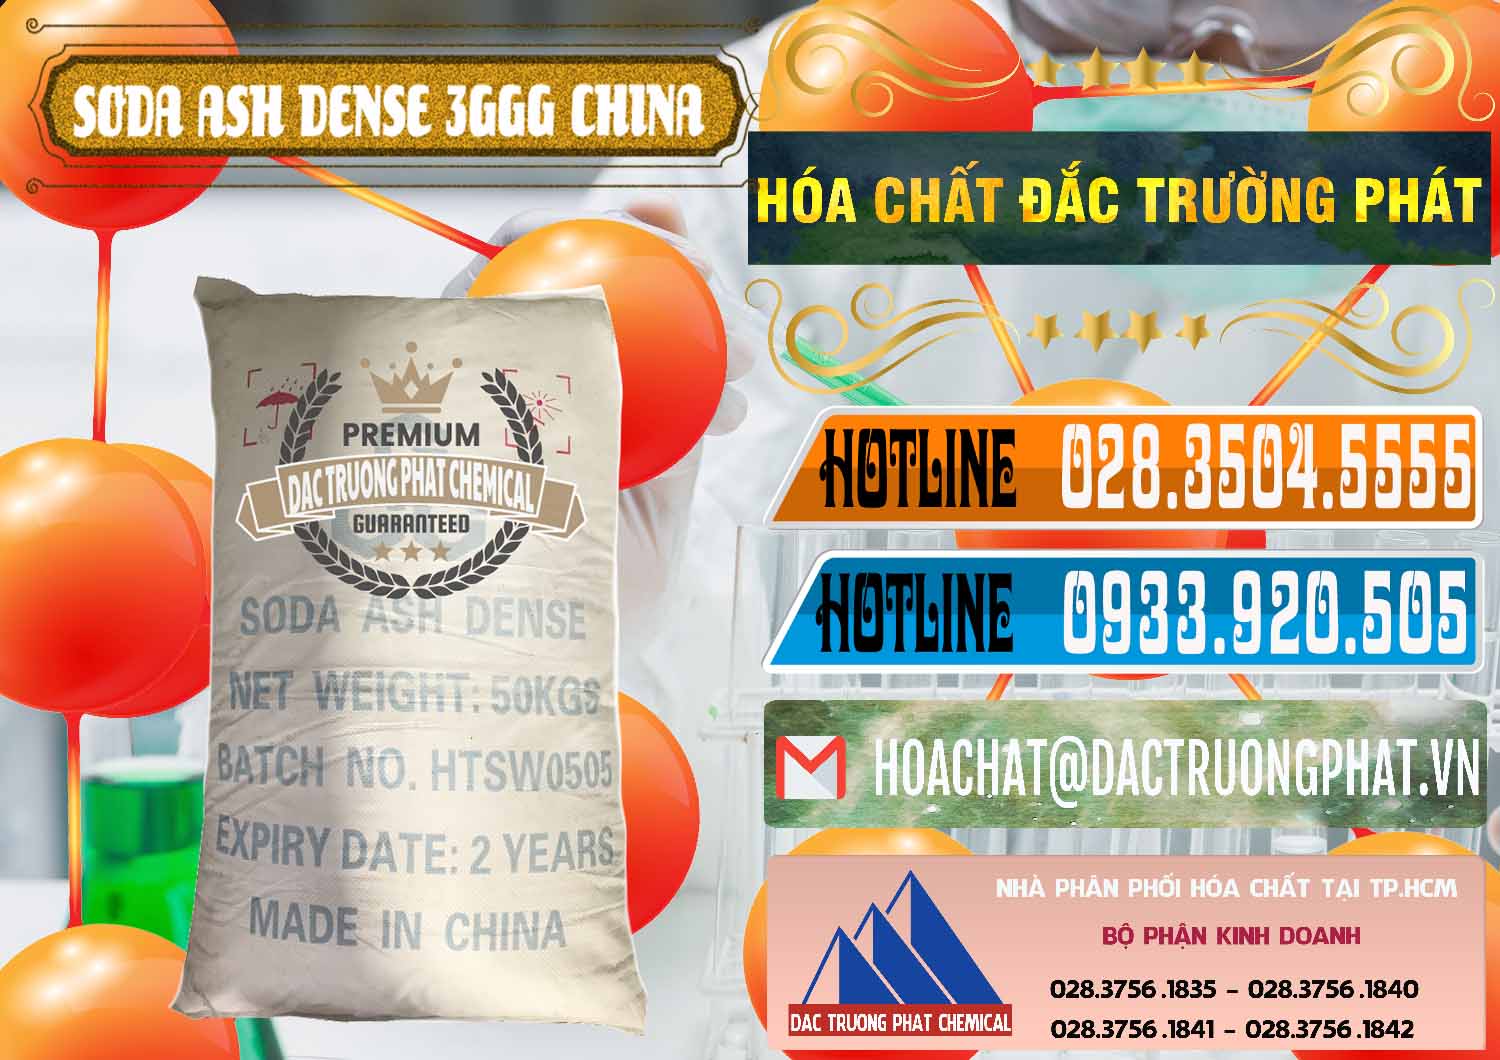 Cty chuyên bán ( phân phối ) Soda Ash Dense - NA2CO3 3GGG Trung Quốc China - 0335 - Nơi chuyên kinh doanh & phân phối hóa chất tại TP.HCM - stmp.net